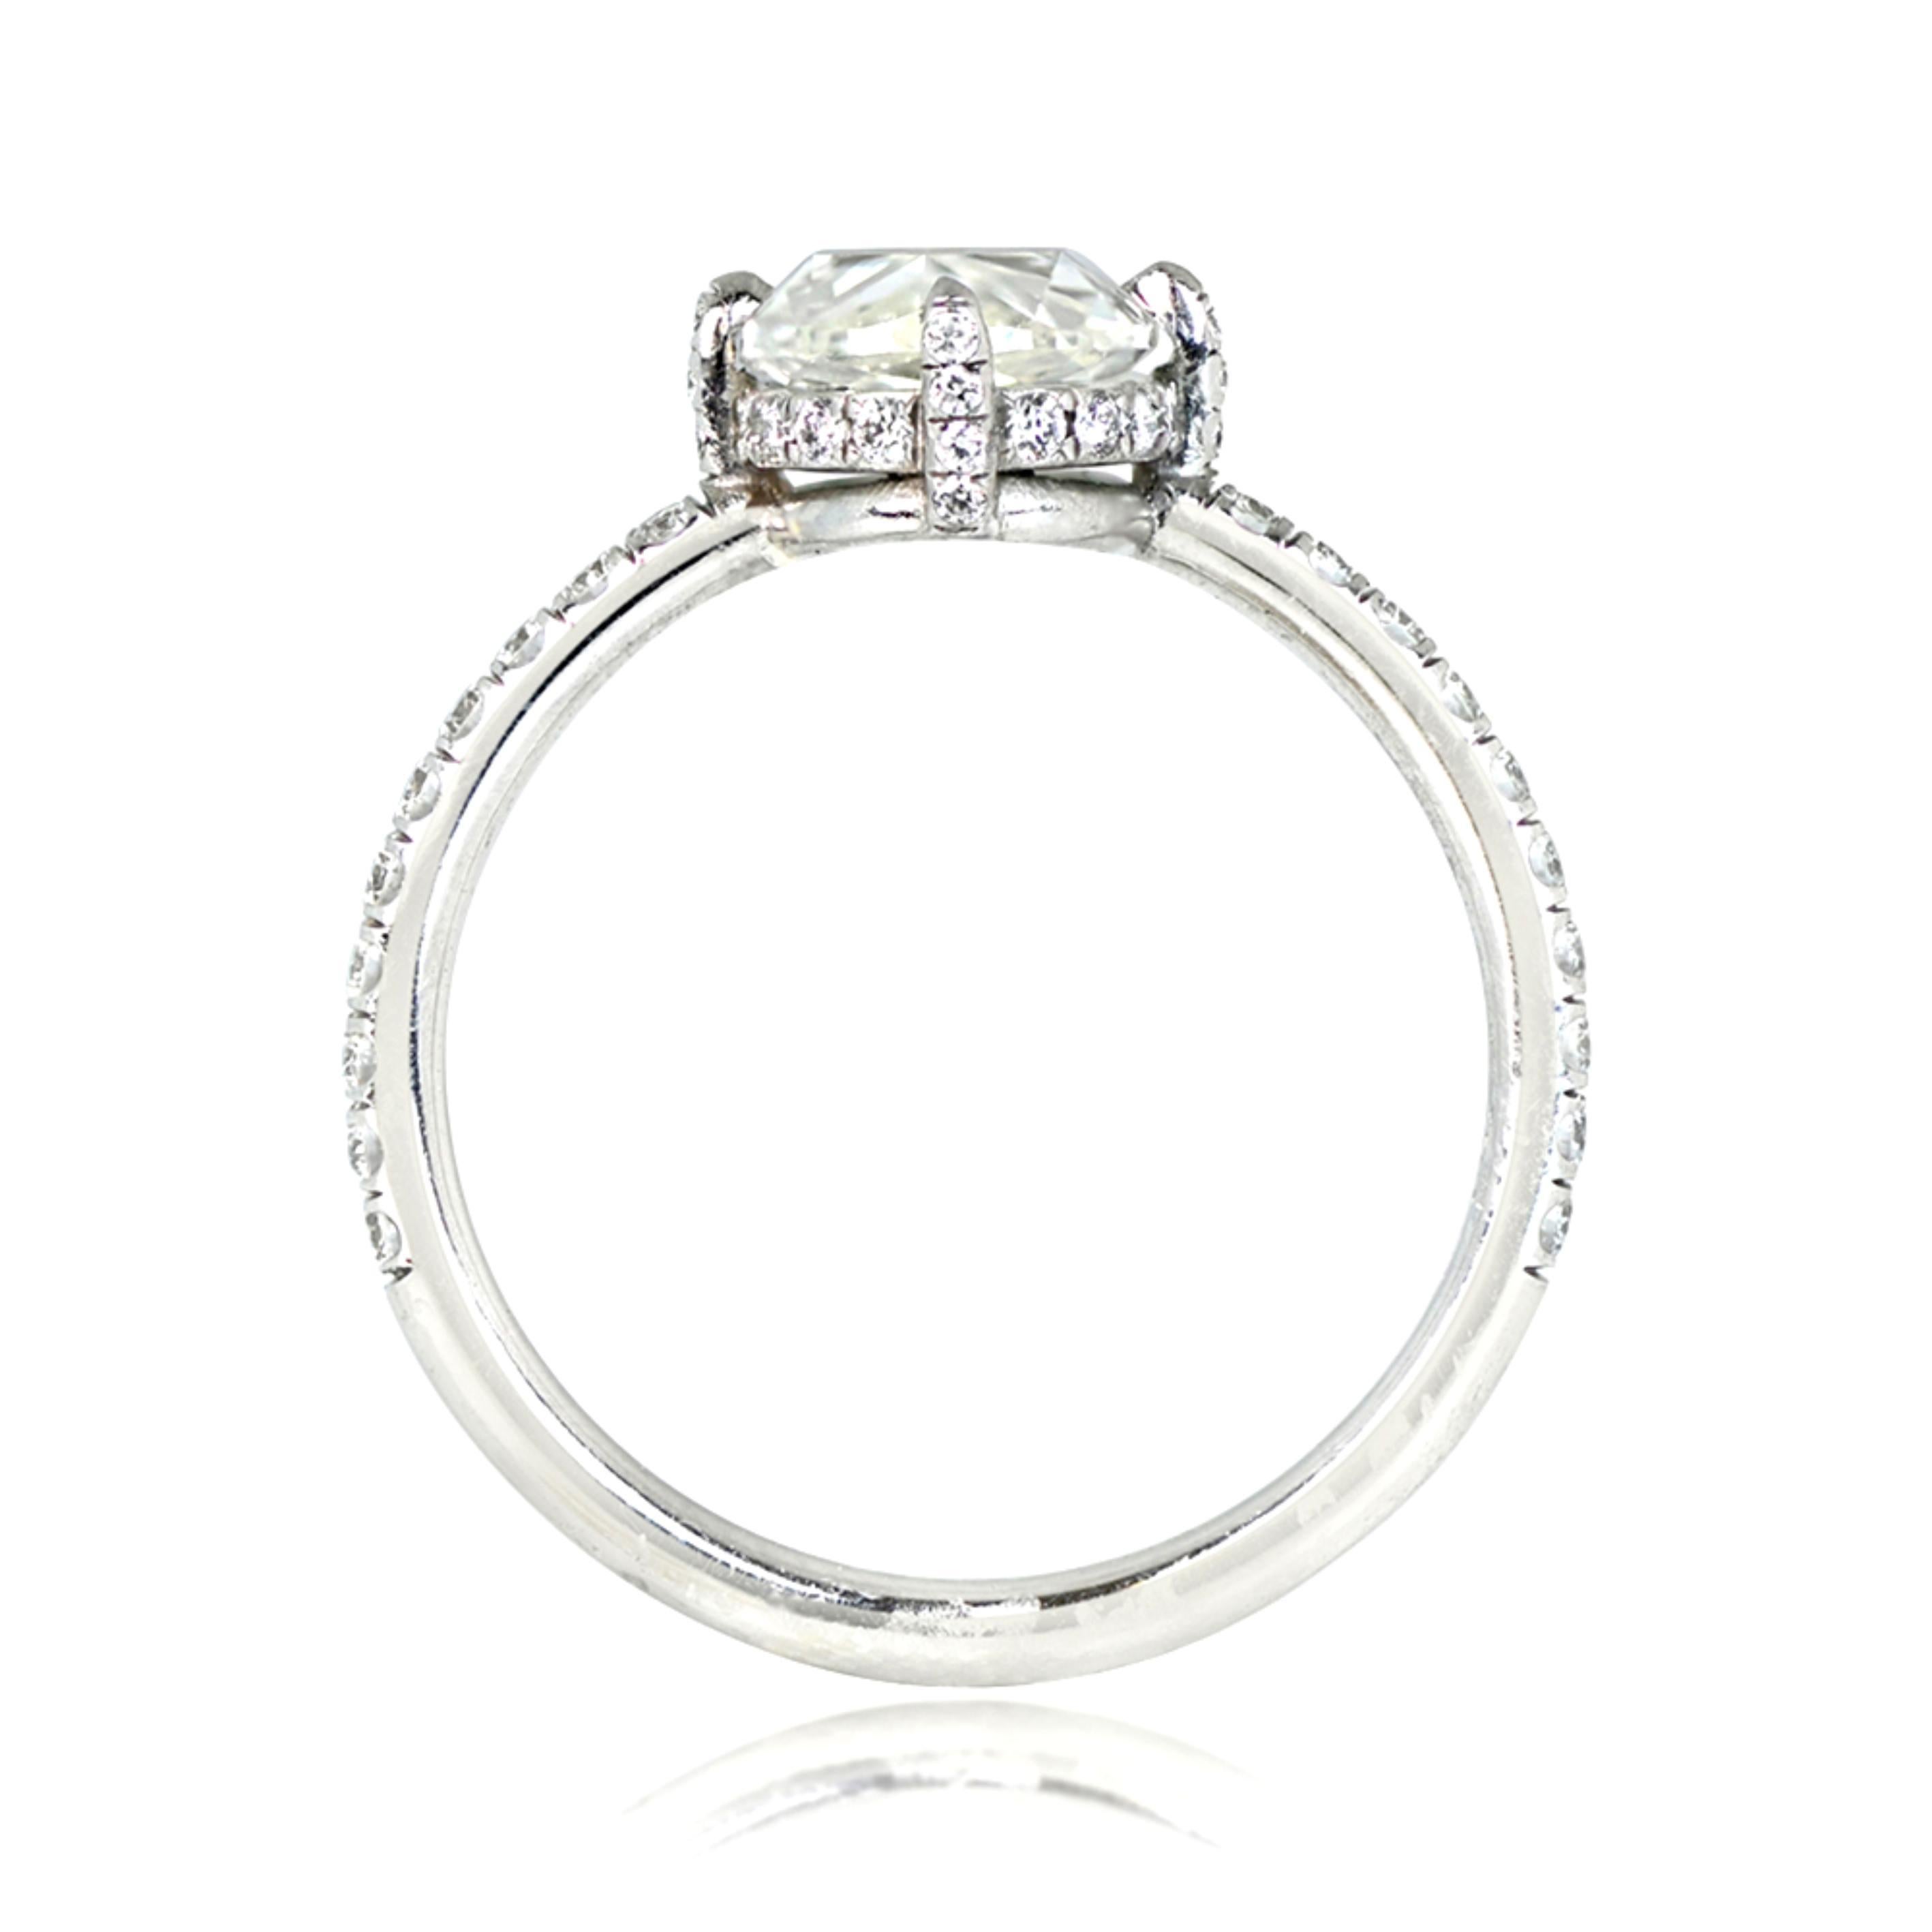 Dieser aus Platin gefertigte Verlobungsring besticht durch einen ovalen Diamanten im Rosenschliff von 1,55 Karat mit der Farbe I und der Reinheit VS1, der in eleganten Zacken gefasst ist. Entlang der Schultern und des Schafts setzen runde Brillanten